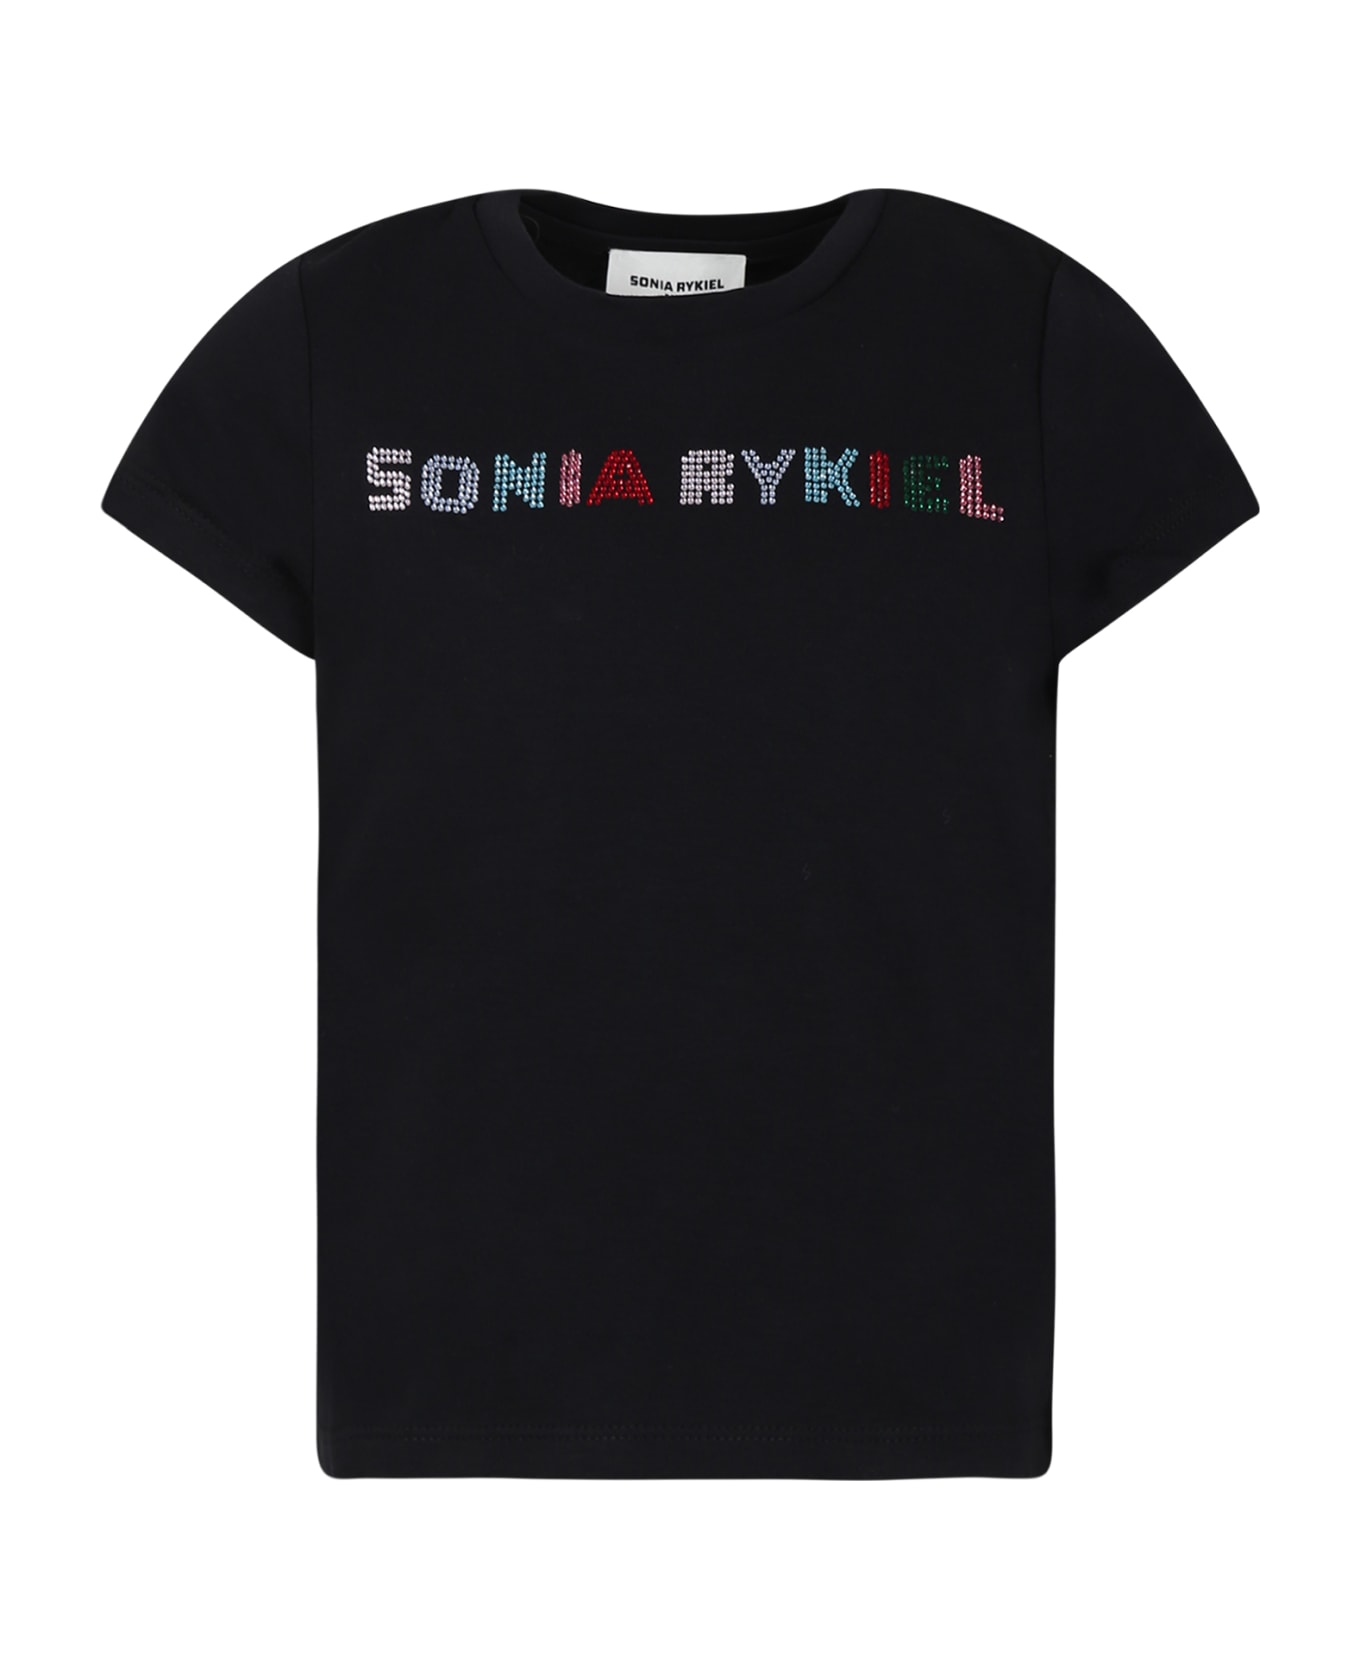 Rykiel Enfant Black T-shirt For Girl - Black